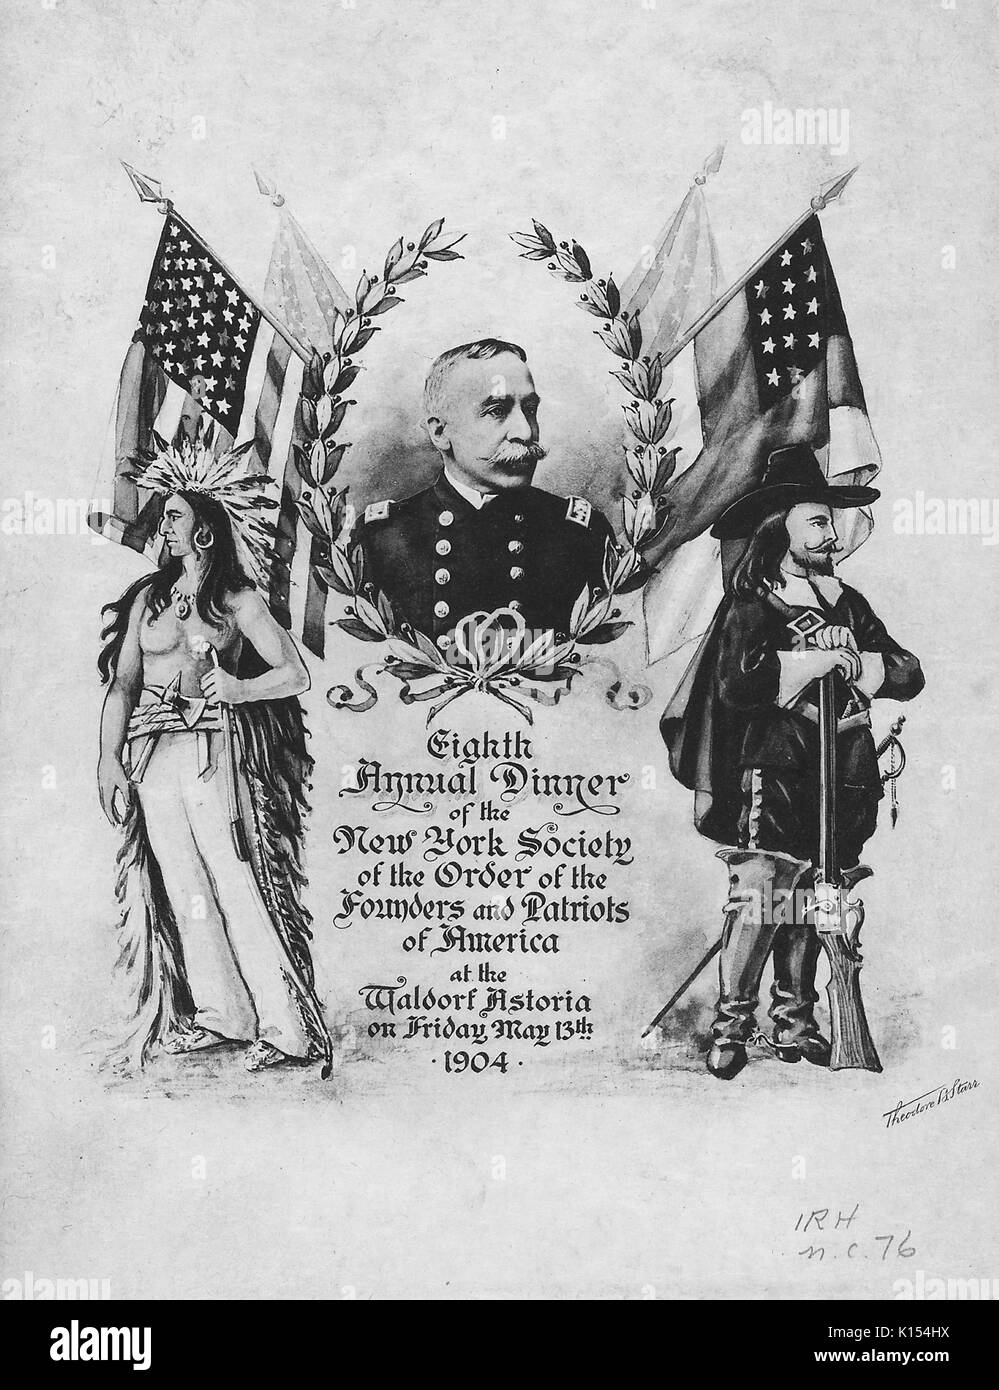 Couvercle Menu, avec le portrait de l'amiral George Dewey, pour la huitième dîner annuel de la société de New York de l'Ordre des fondateurs et les patriotes d'Amérique à l'hôtel Waldorf Astoria, New York, New York, le 13 mai 1904. Banque D'Images